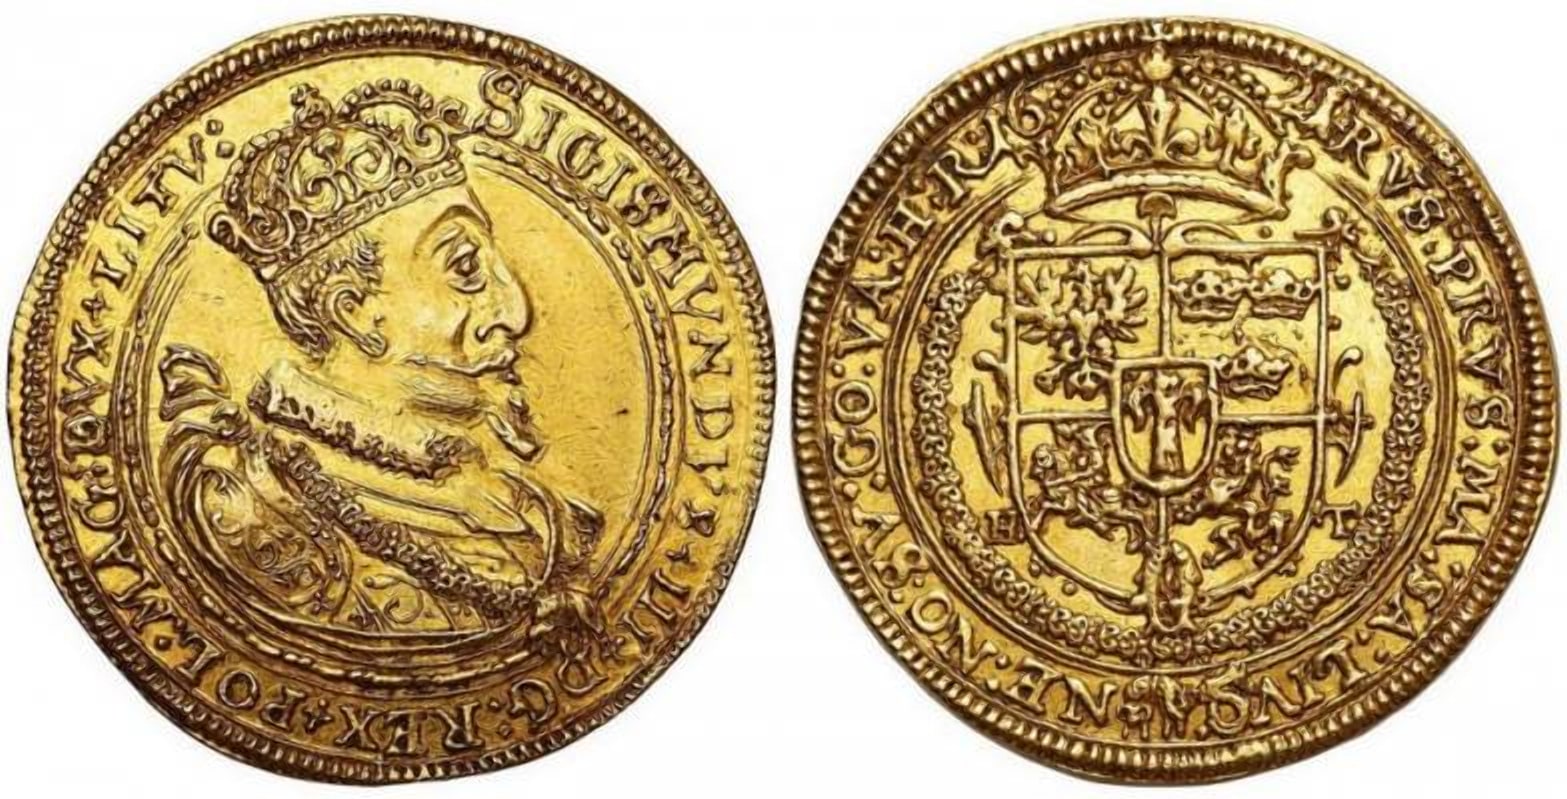 Золотая монета чеканенная для ВКЛ, основа кладов 17 века